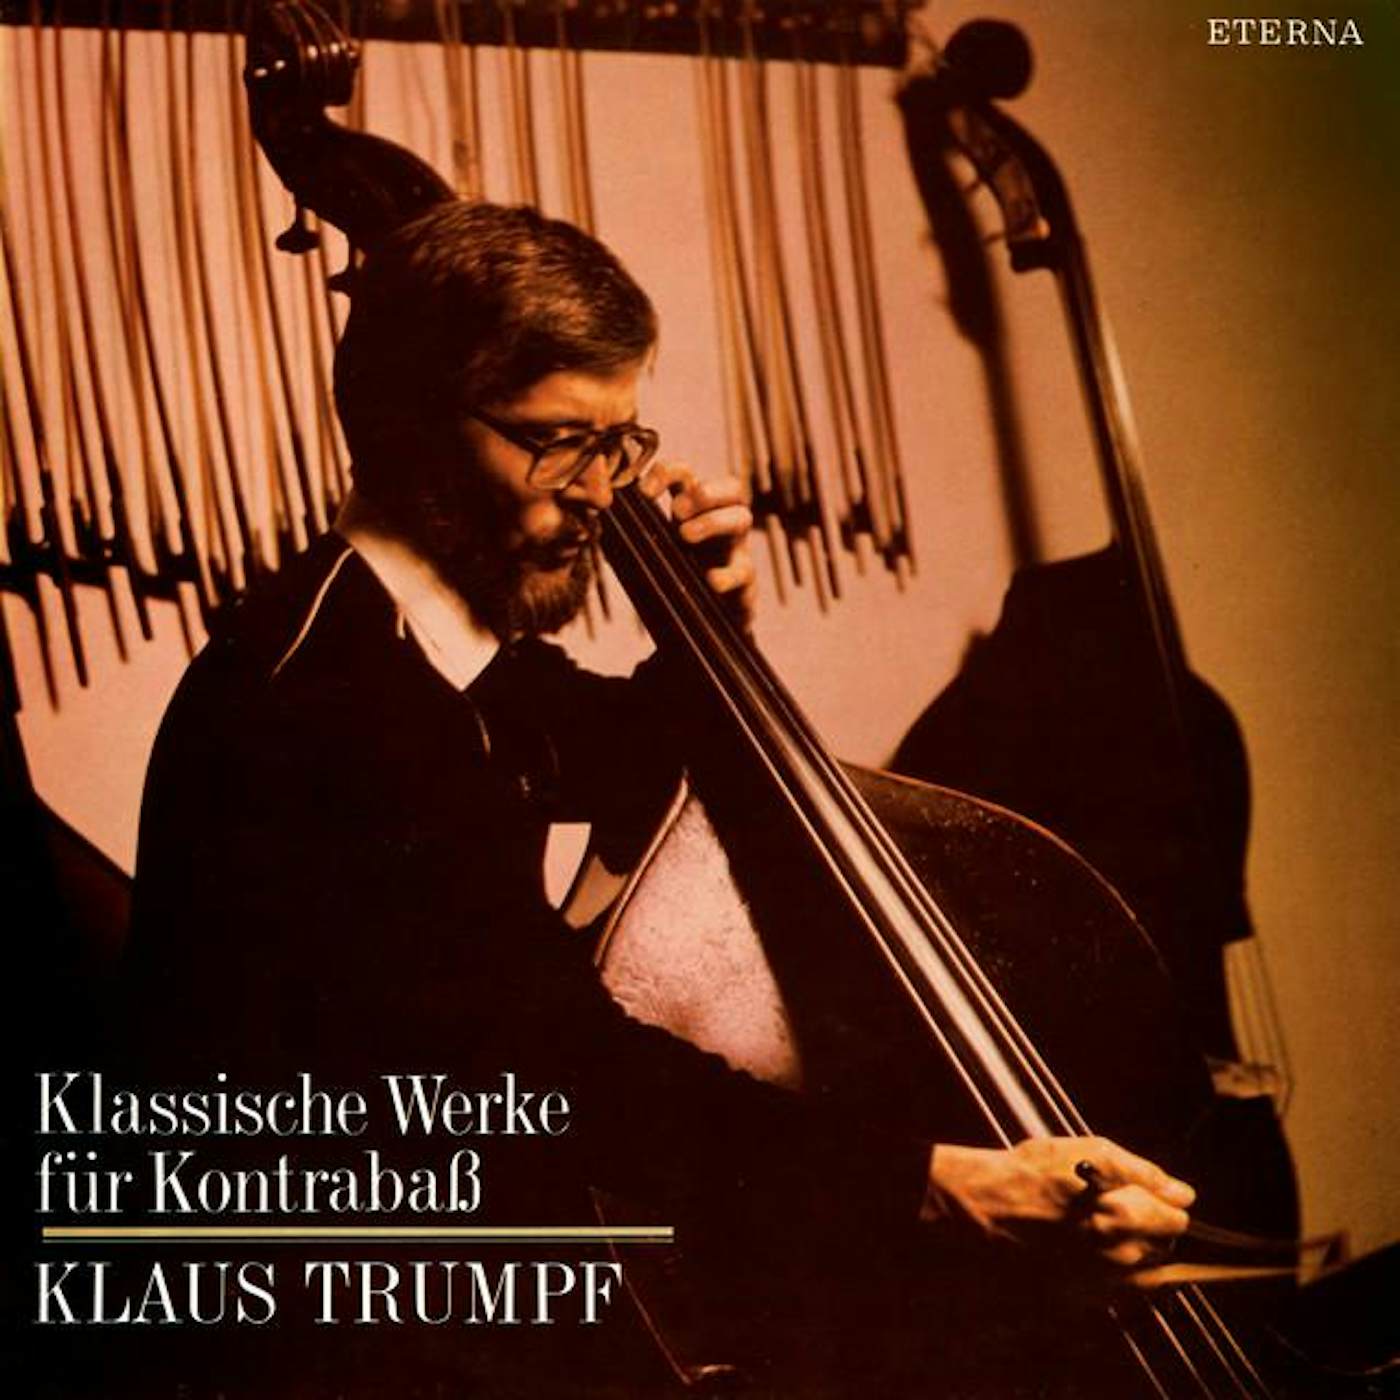 Klaus Trumpf